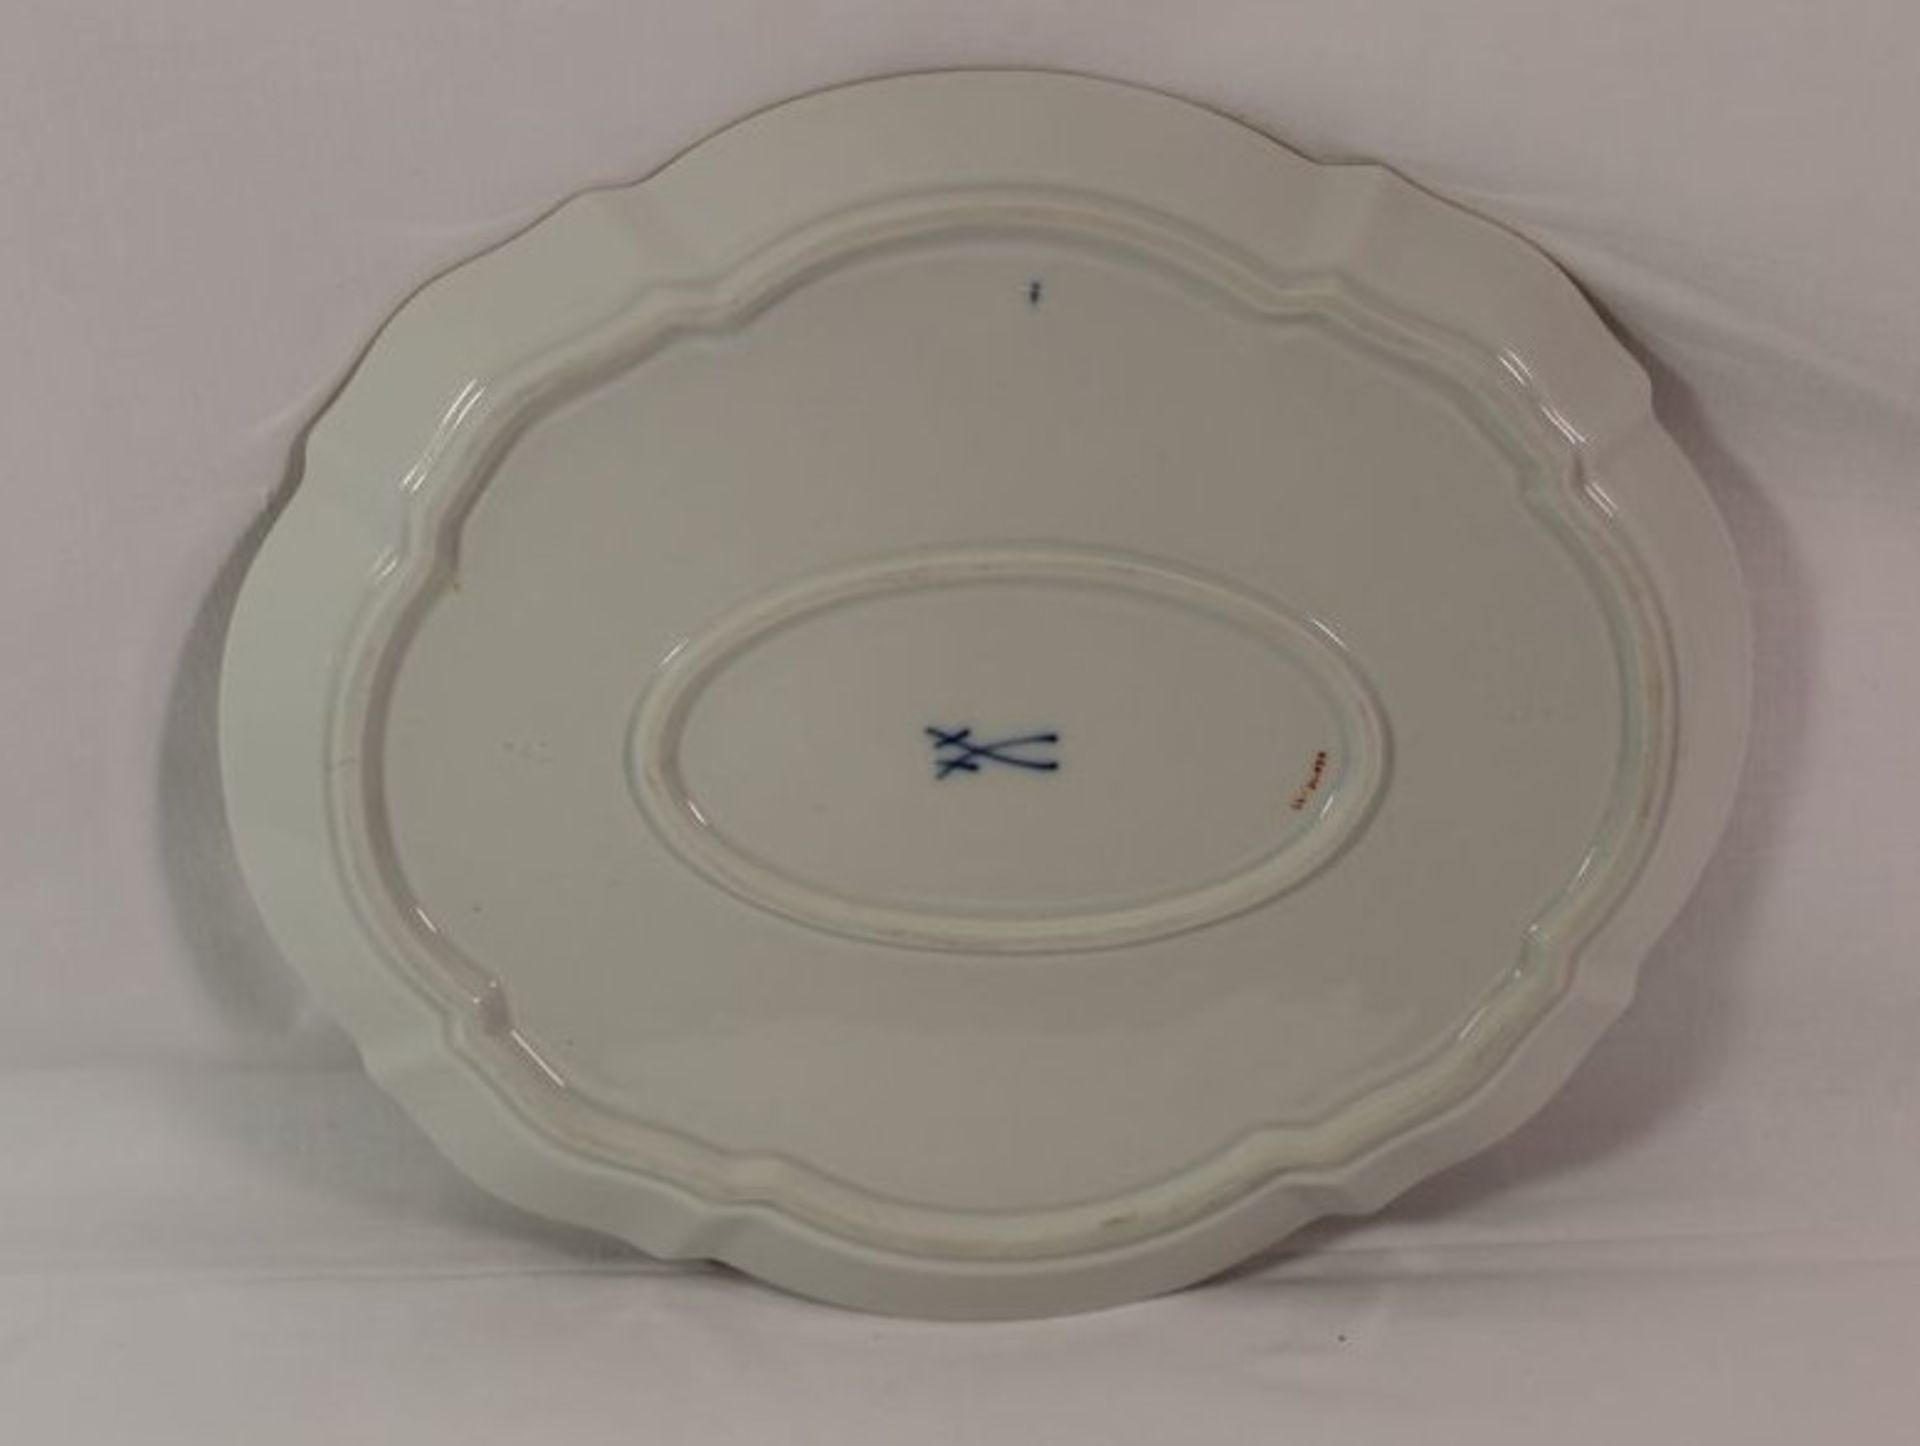 ovale Platte, Meissen, Schwertermarke, Blumenbemalung, 2x Schleifstriche, 27 x 23cm. - Bild 2 aus 2